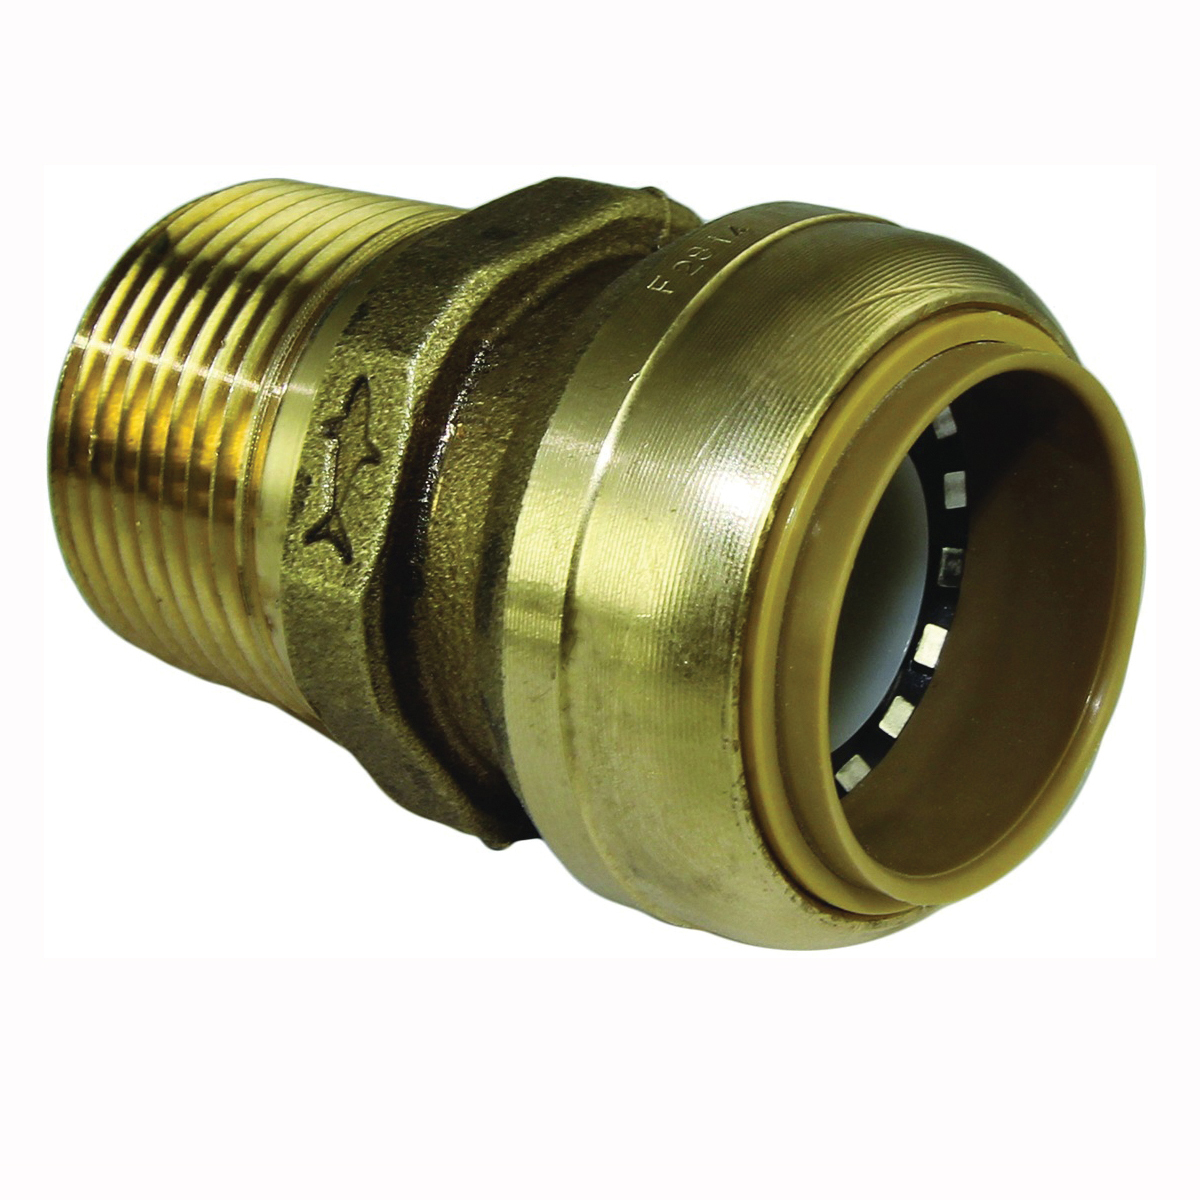 U140LFA Pipe Connector, 1 in, MNPT, Brass, 200 psi Pressure